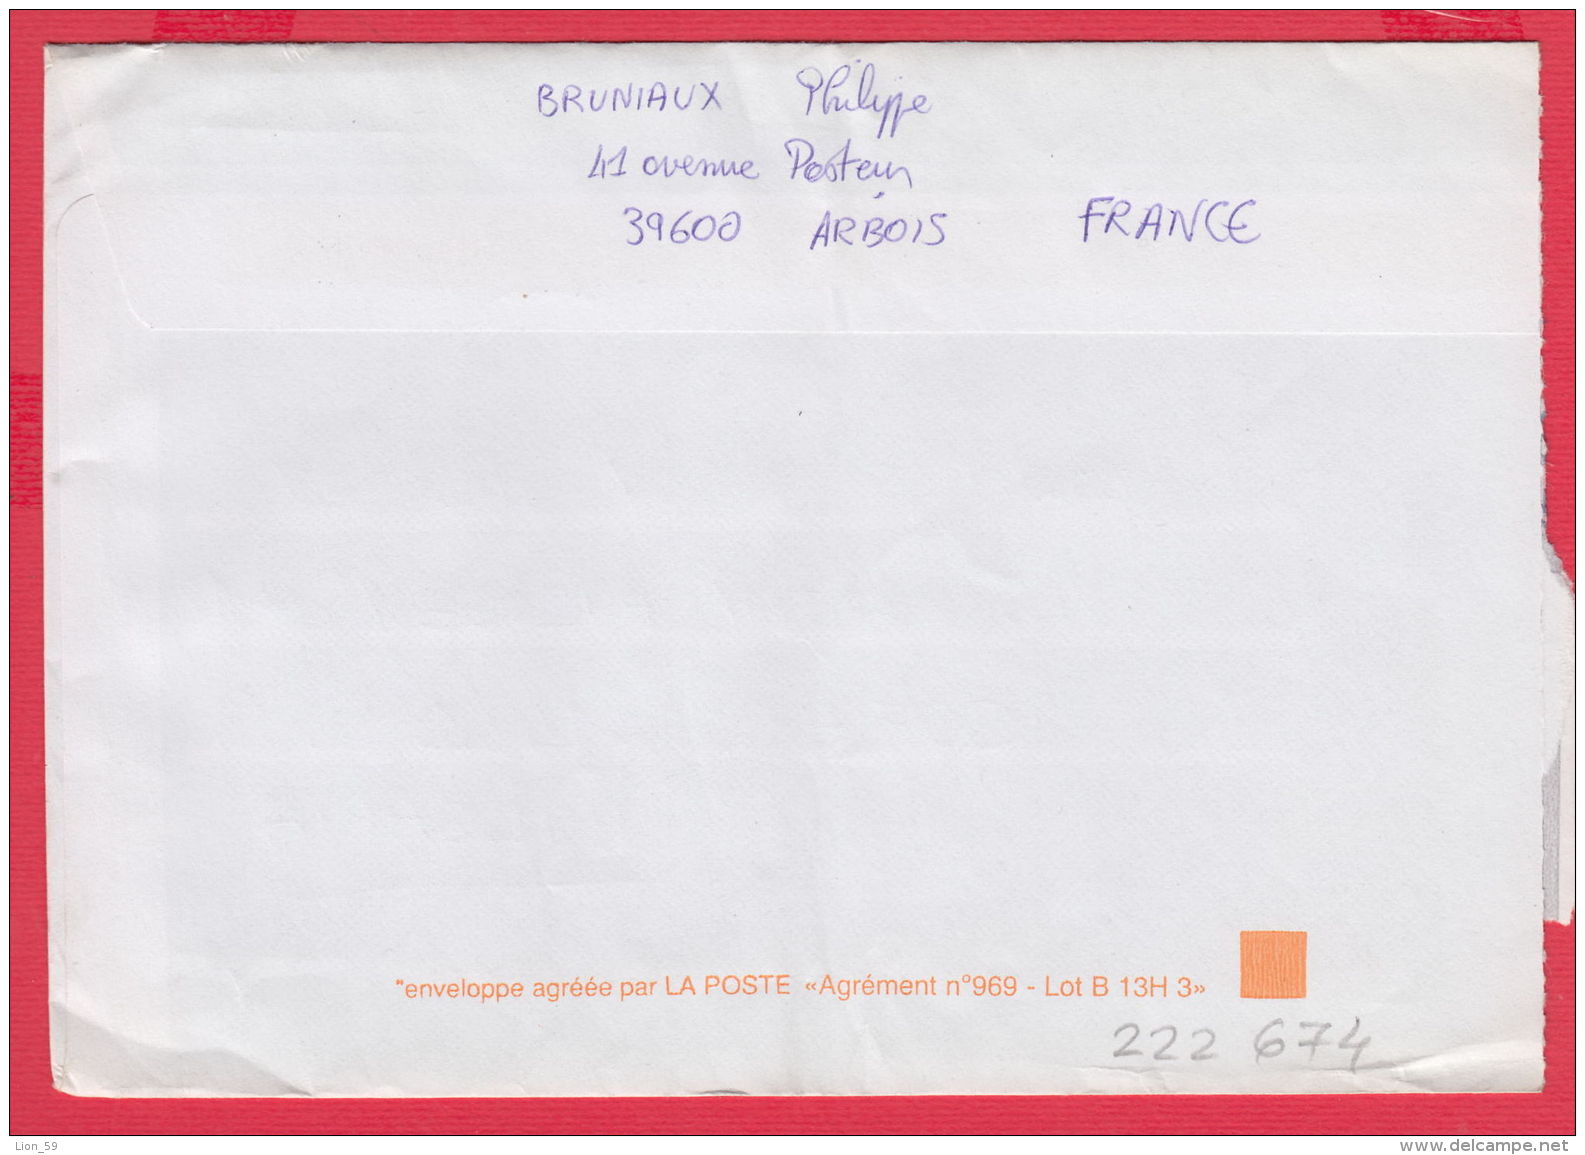 222674 / 2006 - 0.75 EUR / 4.92 Fr. STAMP LABEL ,  LONS LE SAUNIER BRIAND France Frankreich Francia TO BULGARIA - 1999-2009 Vignettes Illustrées